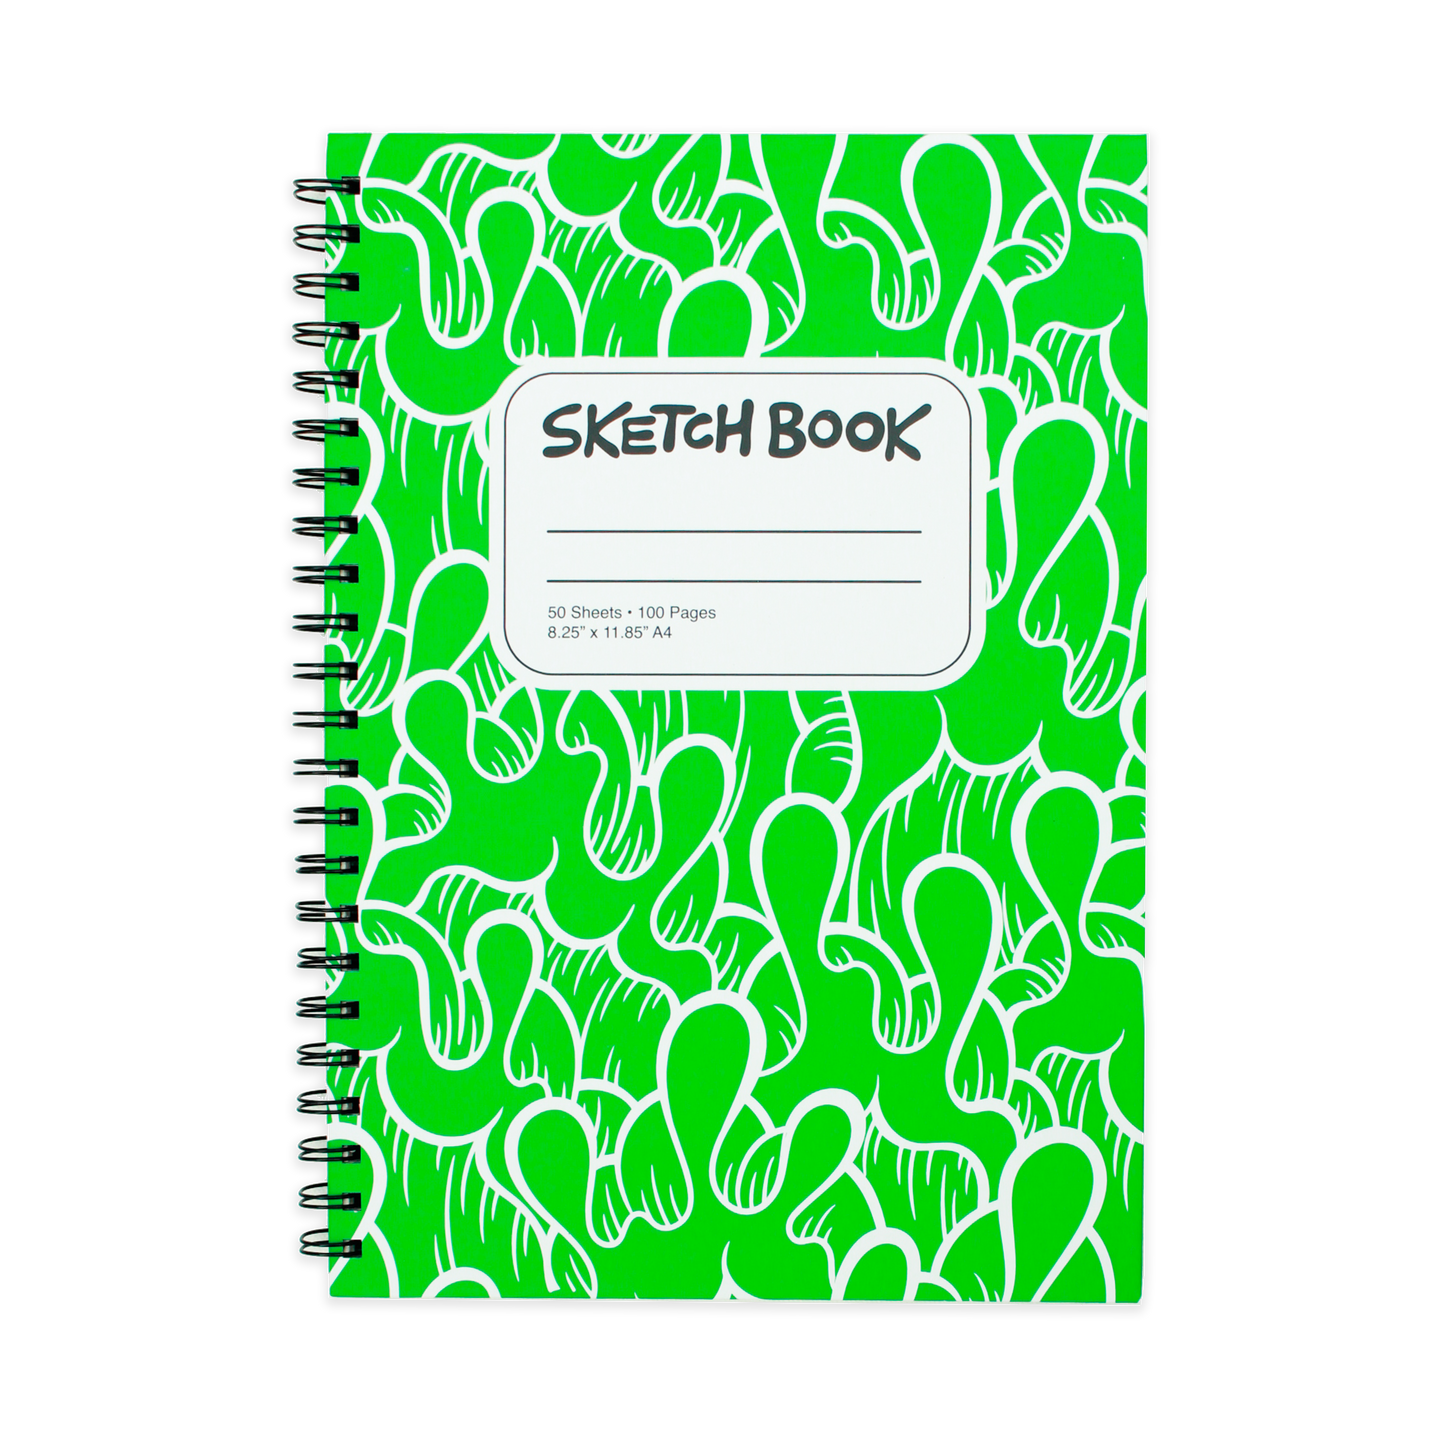 Sketchbook by Aaron Kai (Green)